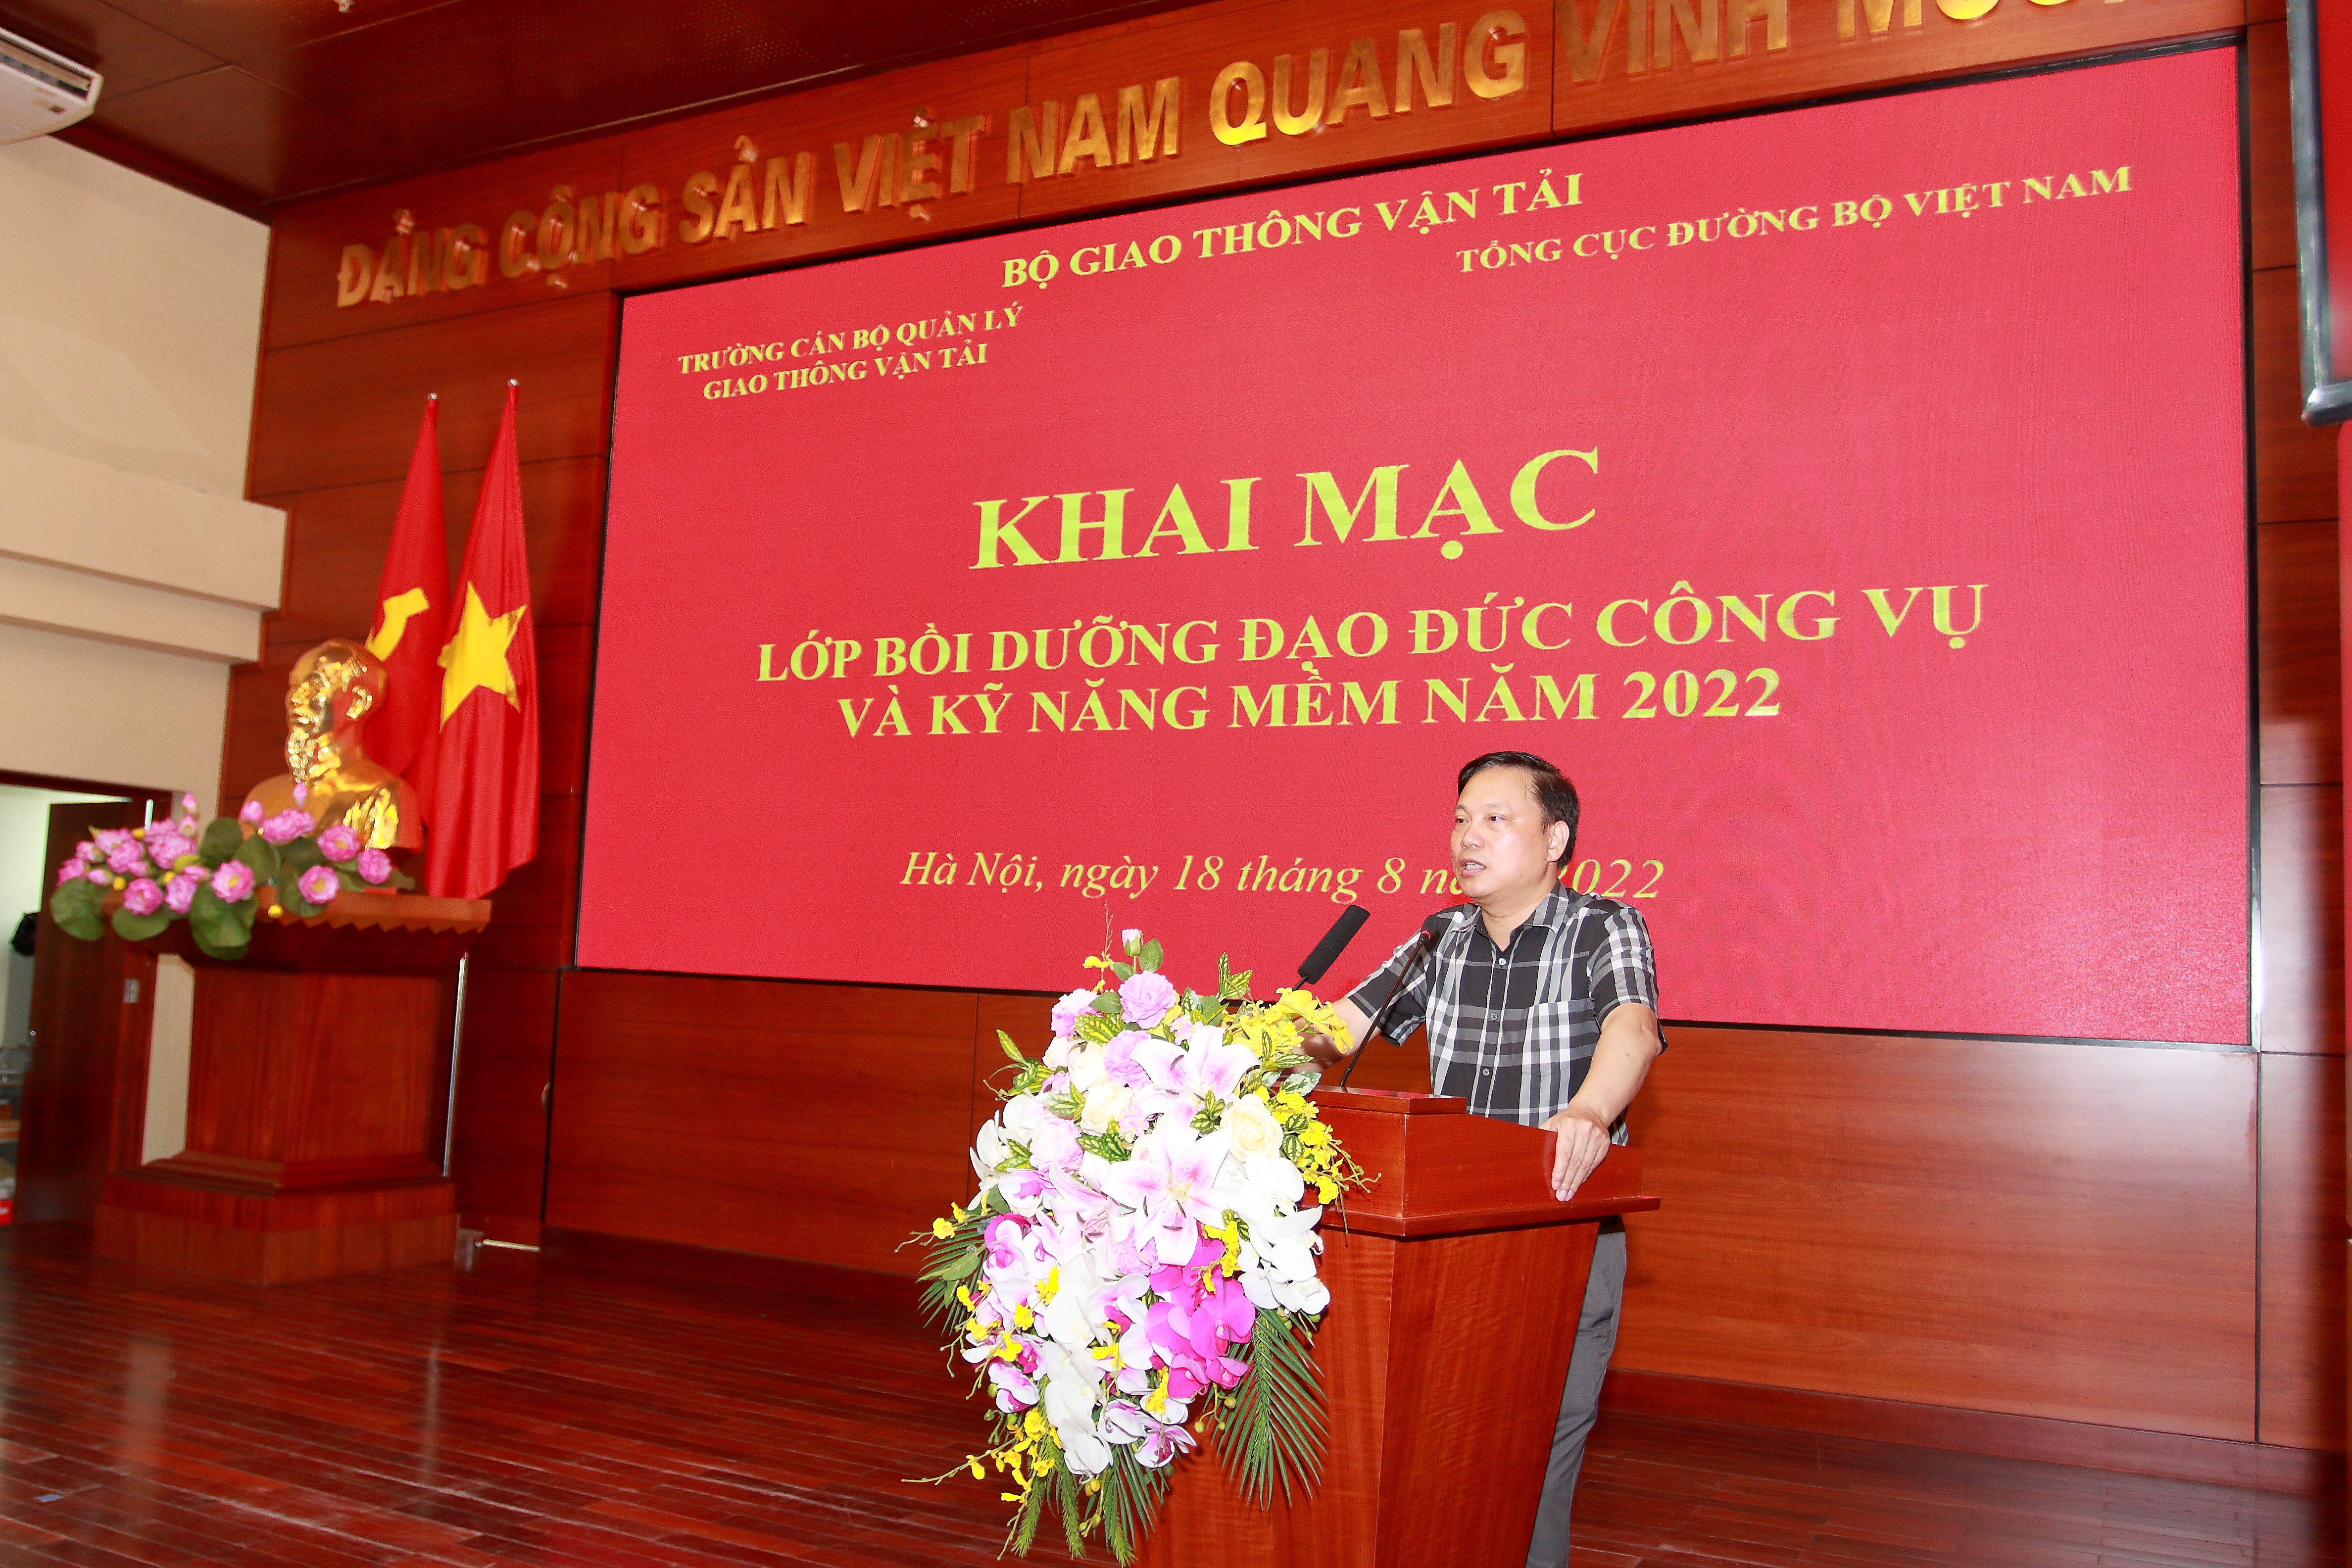 Khai mạc lớp Bồi dưỡng văn hóa công vụ và kỹ năng mềm tại Tổng cục đường bộ Việt Nam